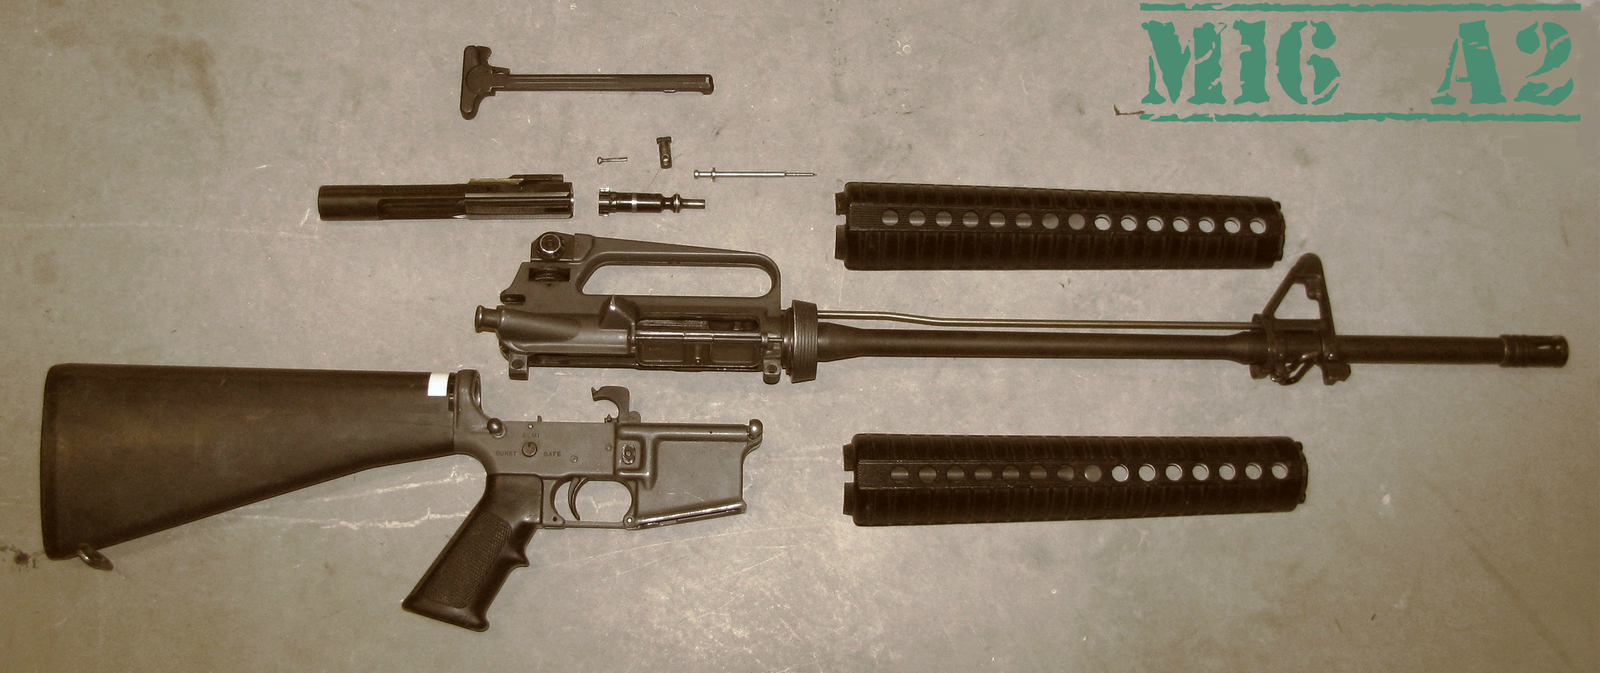 M16 A2 assault rifle (USA) - Weapon, Weapon, Rifle, , Longpost